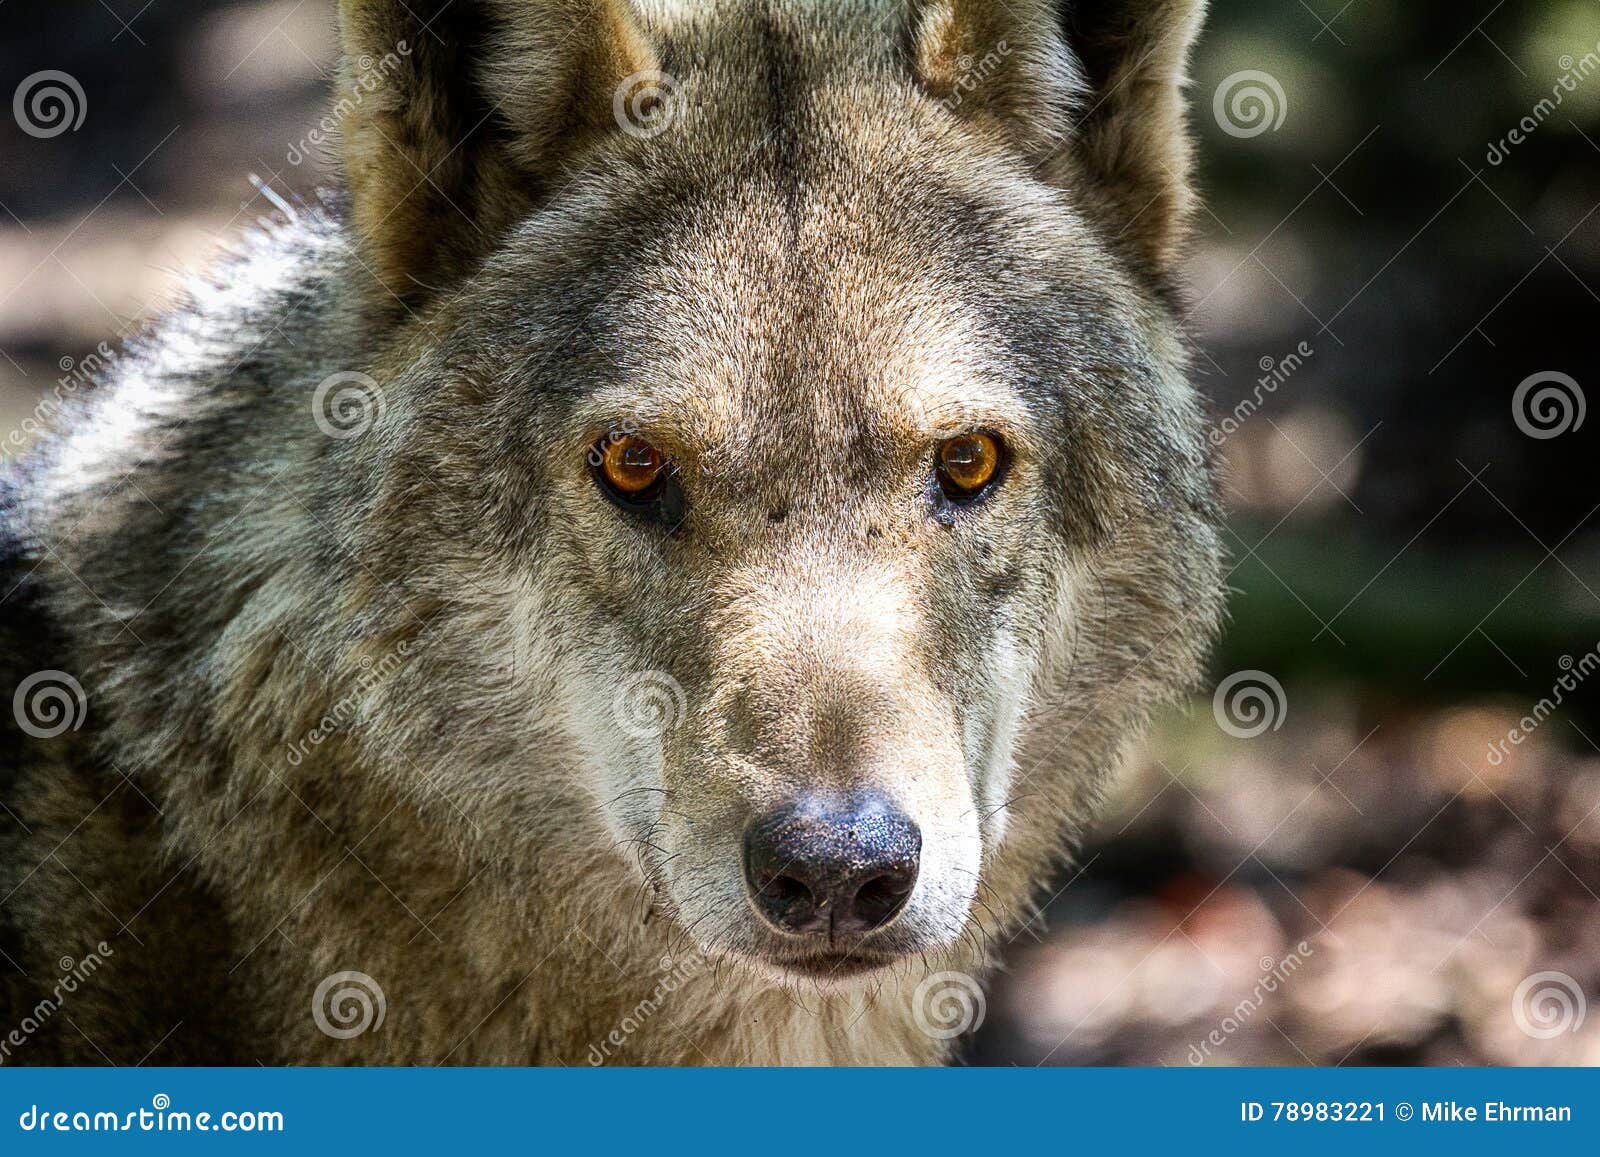 Голова и глаза волка. Детальный портрет wolf& x27; голова s с наблюдать и сигналом тревоги глаз